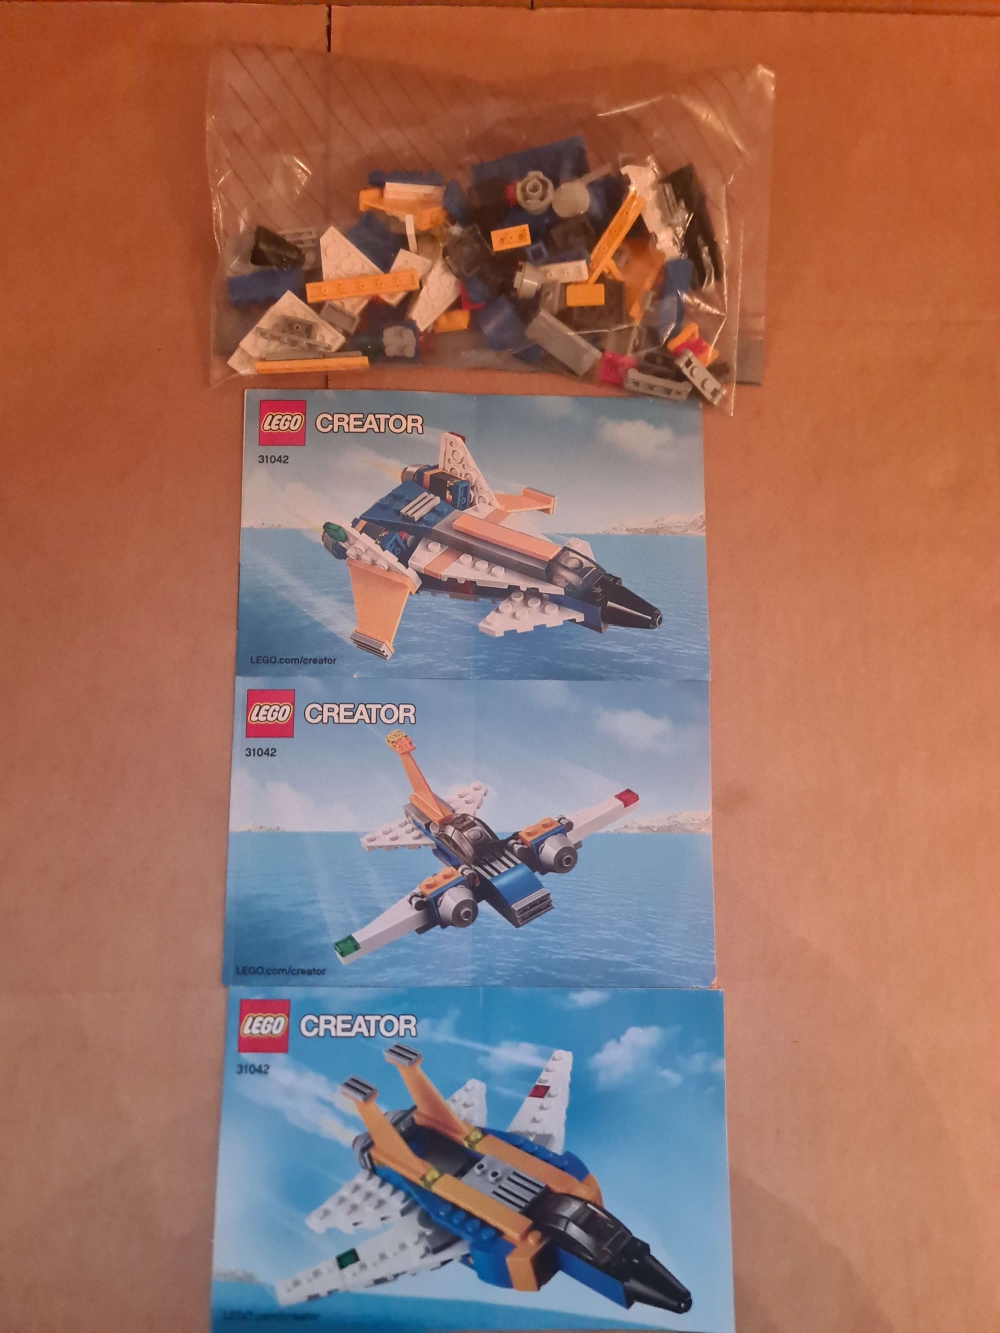 Sett 31042 fra Lego Creator serien. 

Meget pent. Komplett med manualer. 